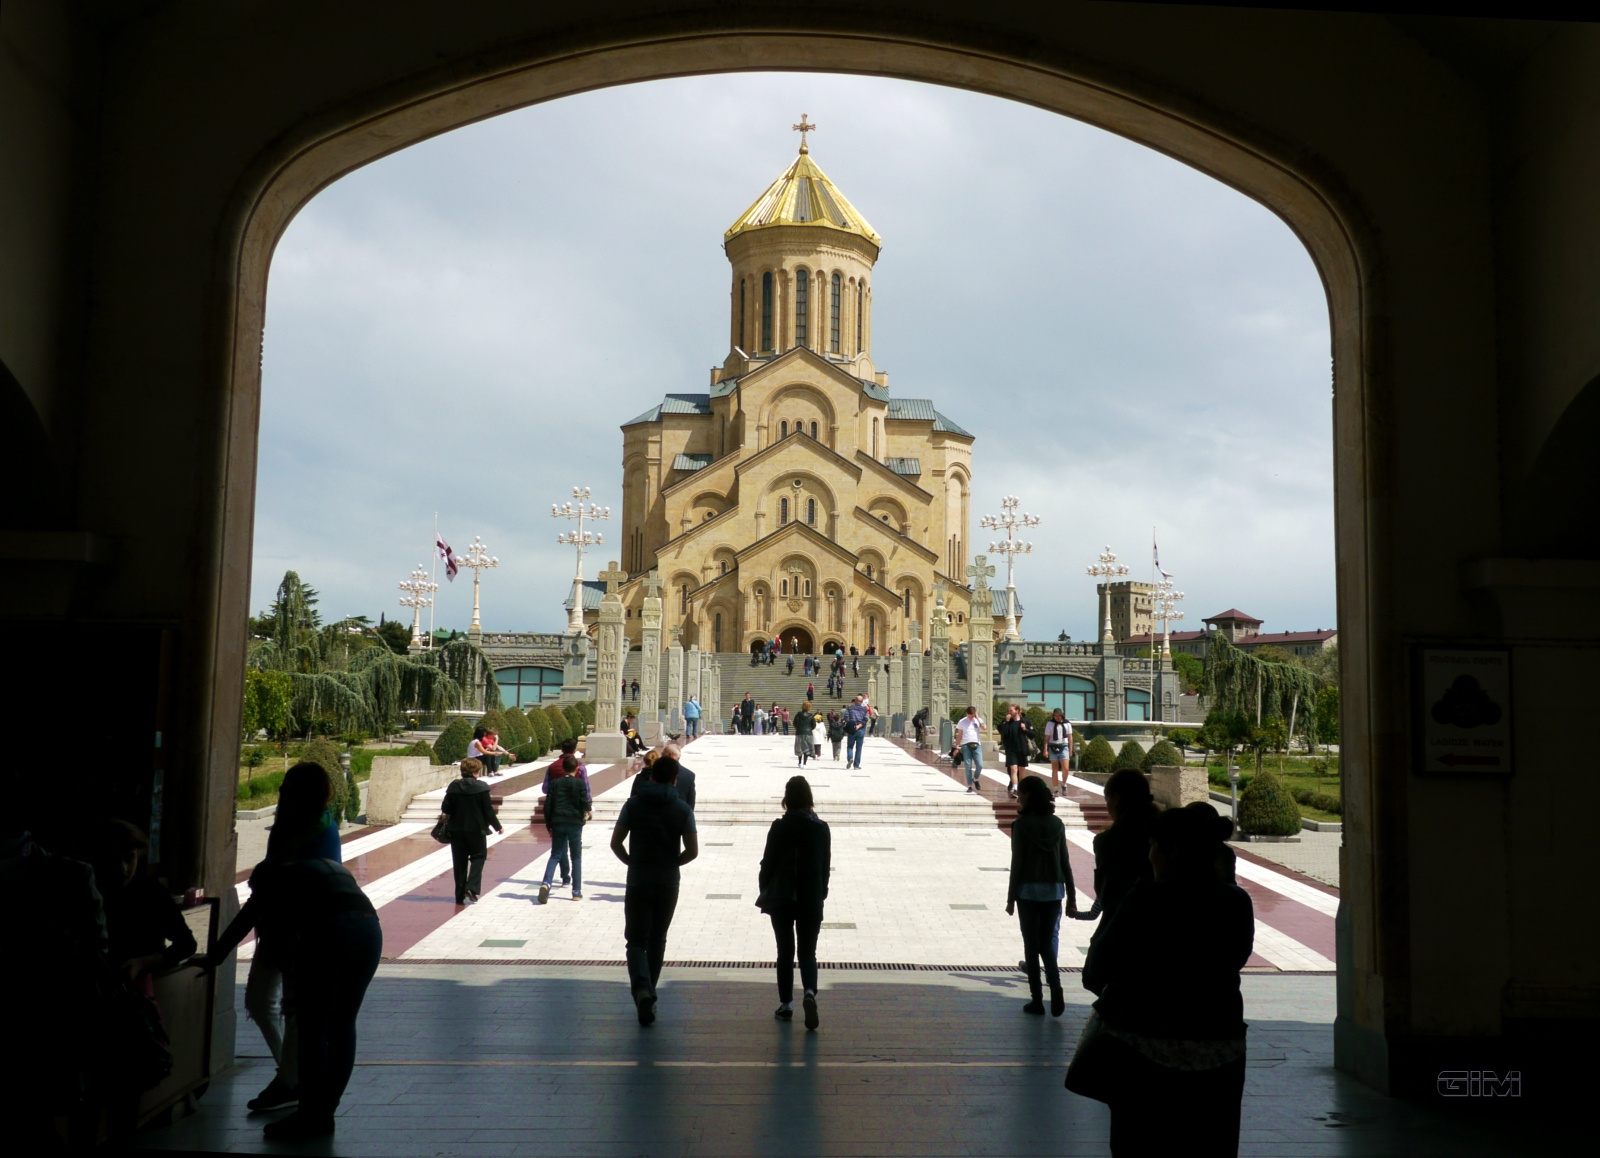 Tbiliszi, Szentháromság katedrális